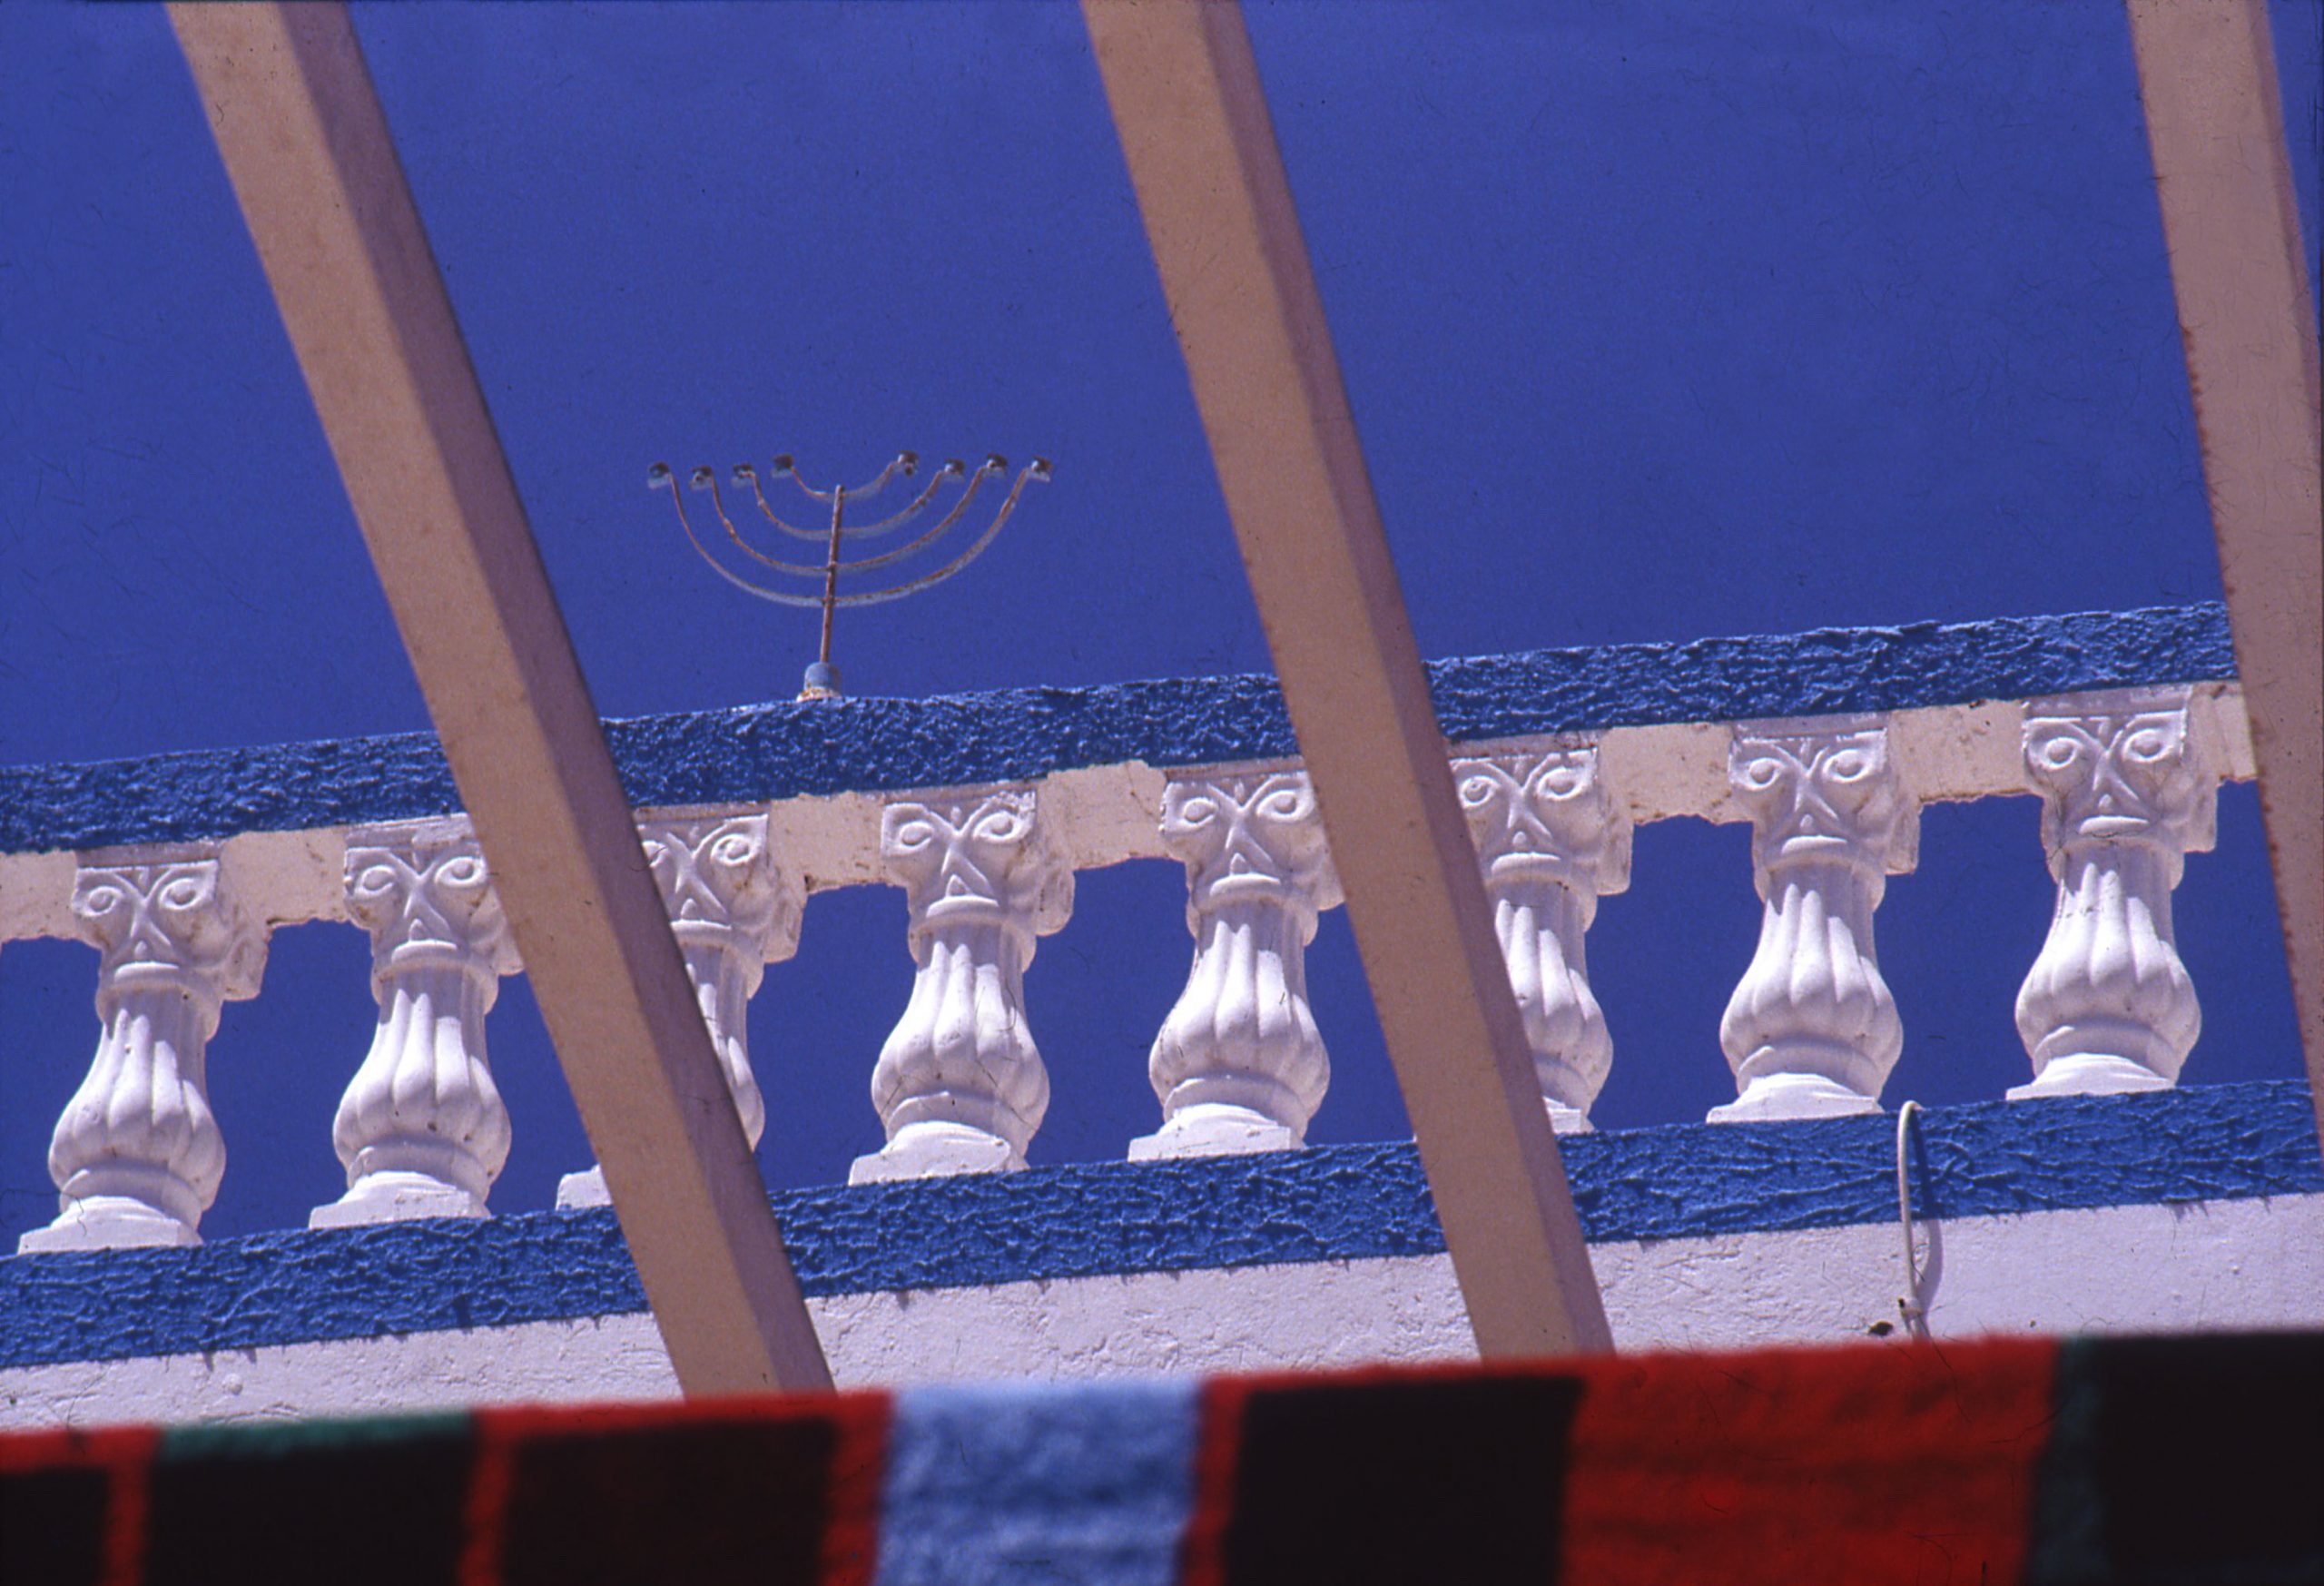 מיכה בר-עם, ח'ארה כבירה, ג'רבה, 1995. המרכז לתיעוד חזותי ע"ש אוסטר, אוסף מיכה בר-עם